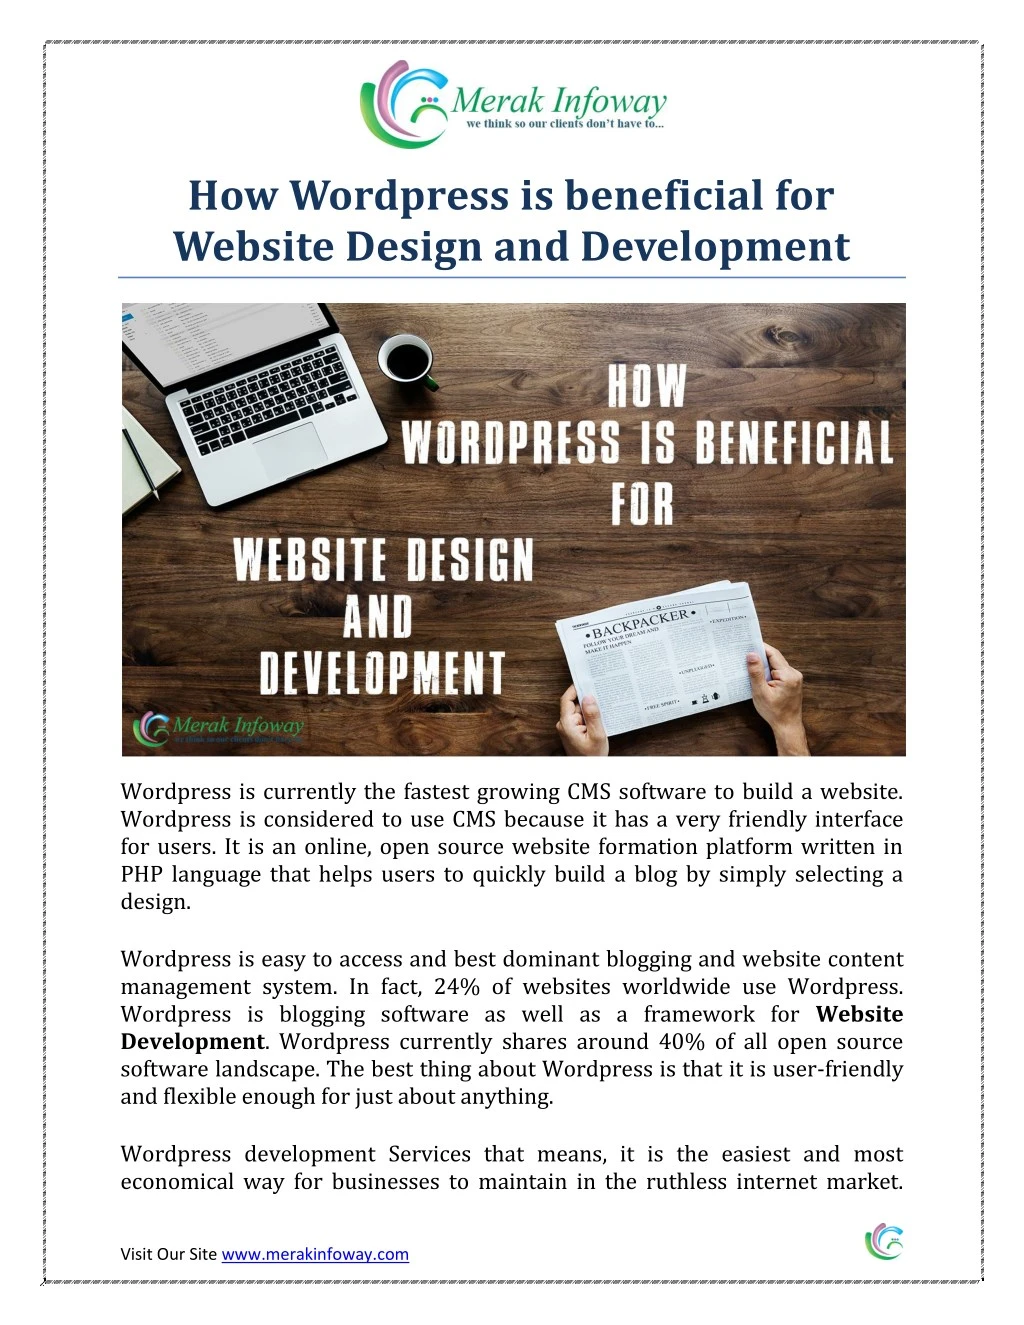 how wordpress is beneficial for website design